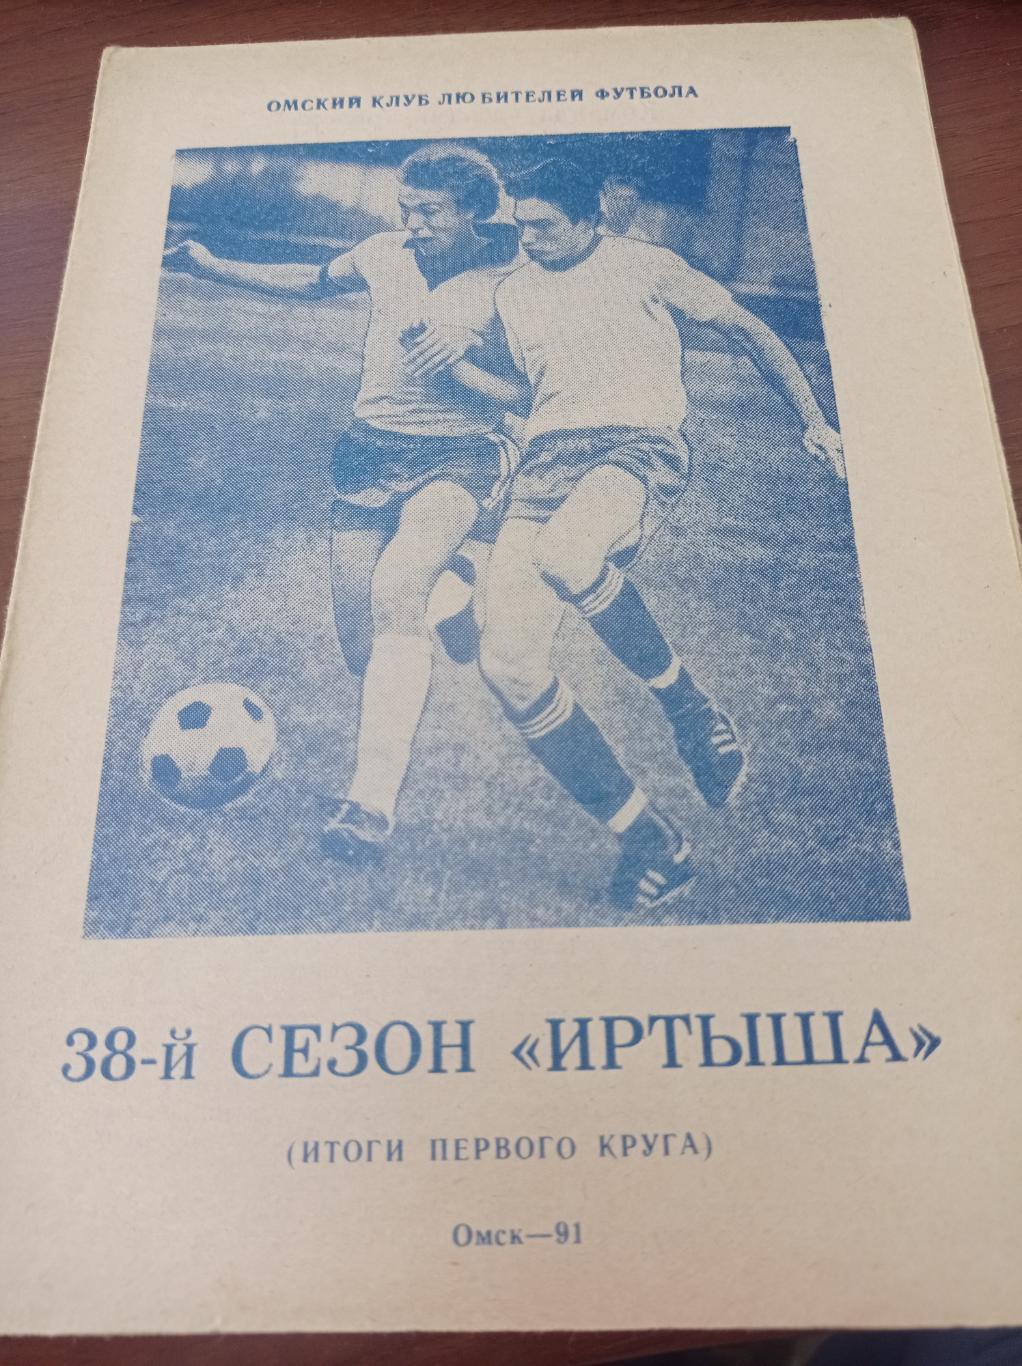 1991 Омск 38 сезон Иртыша, итоги первого круга